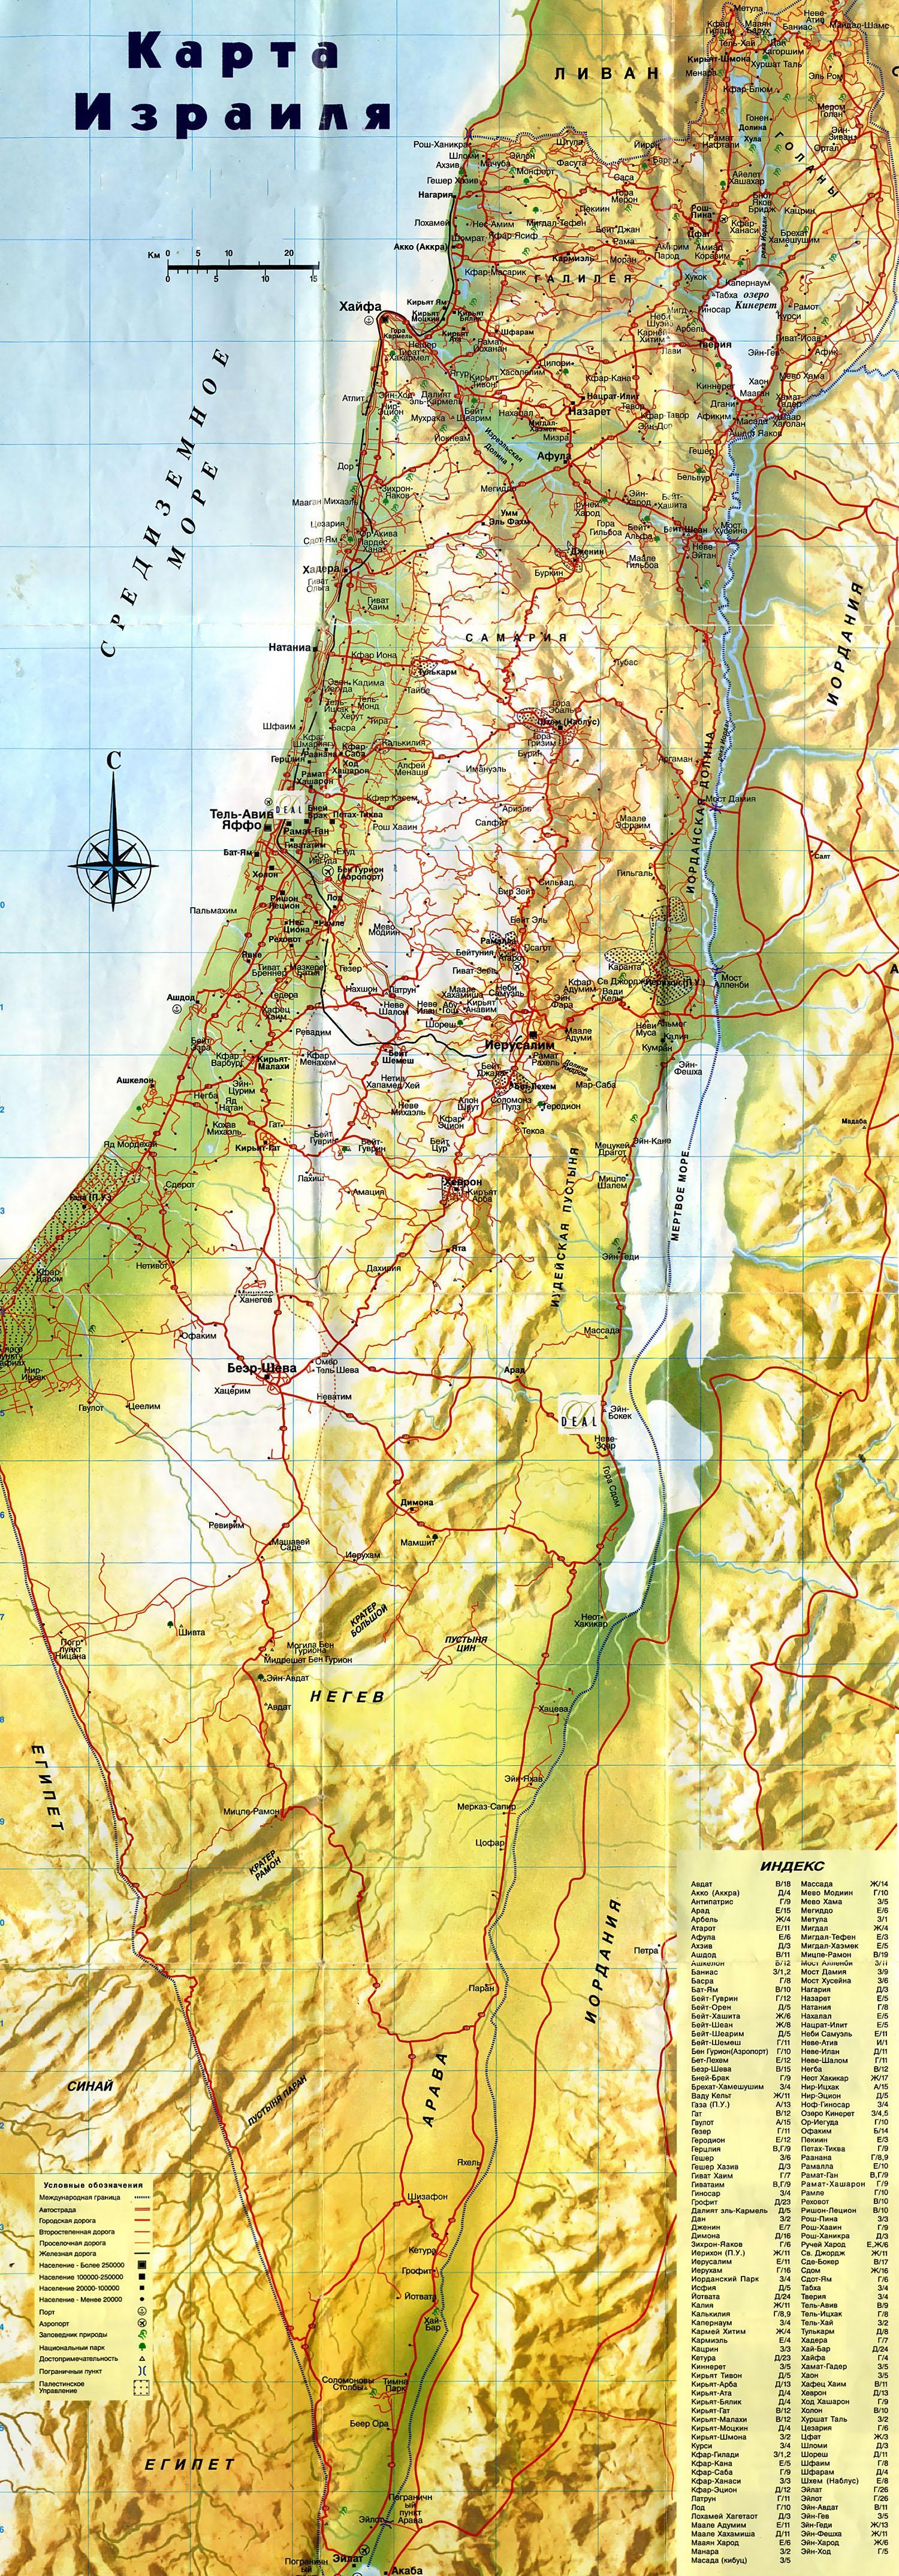 подробная карта Израиля на русском языке